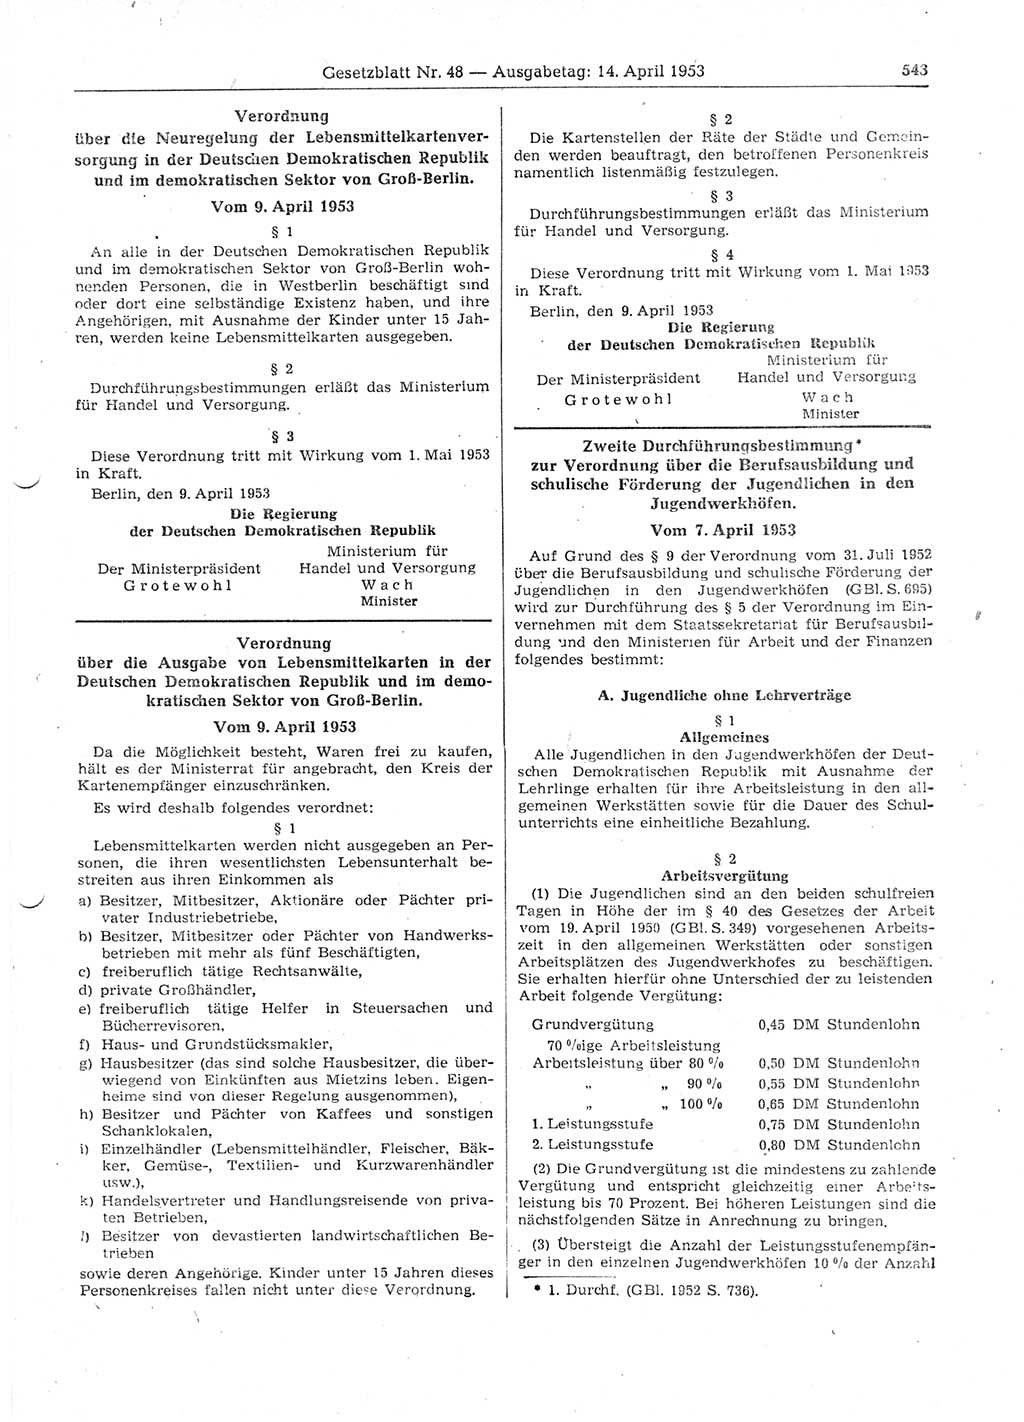 Gesetzblatt (GBl.) der Deutschen Demokratischen Republik (DDR) 1953, Seite 543 (GBl. DDR 1953, S. 543)